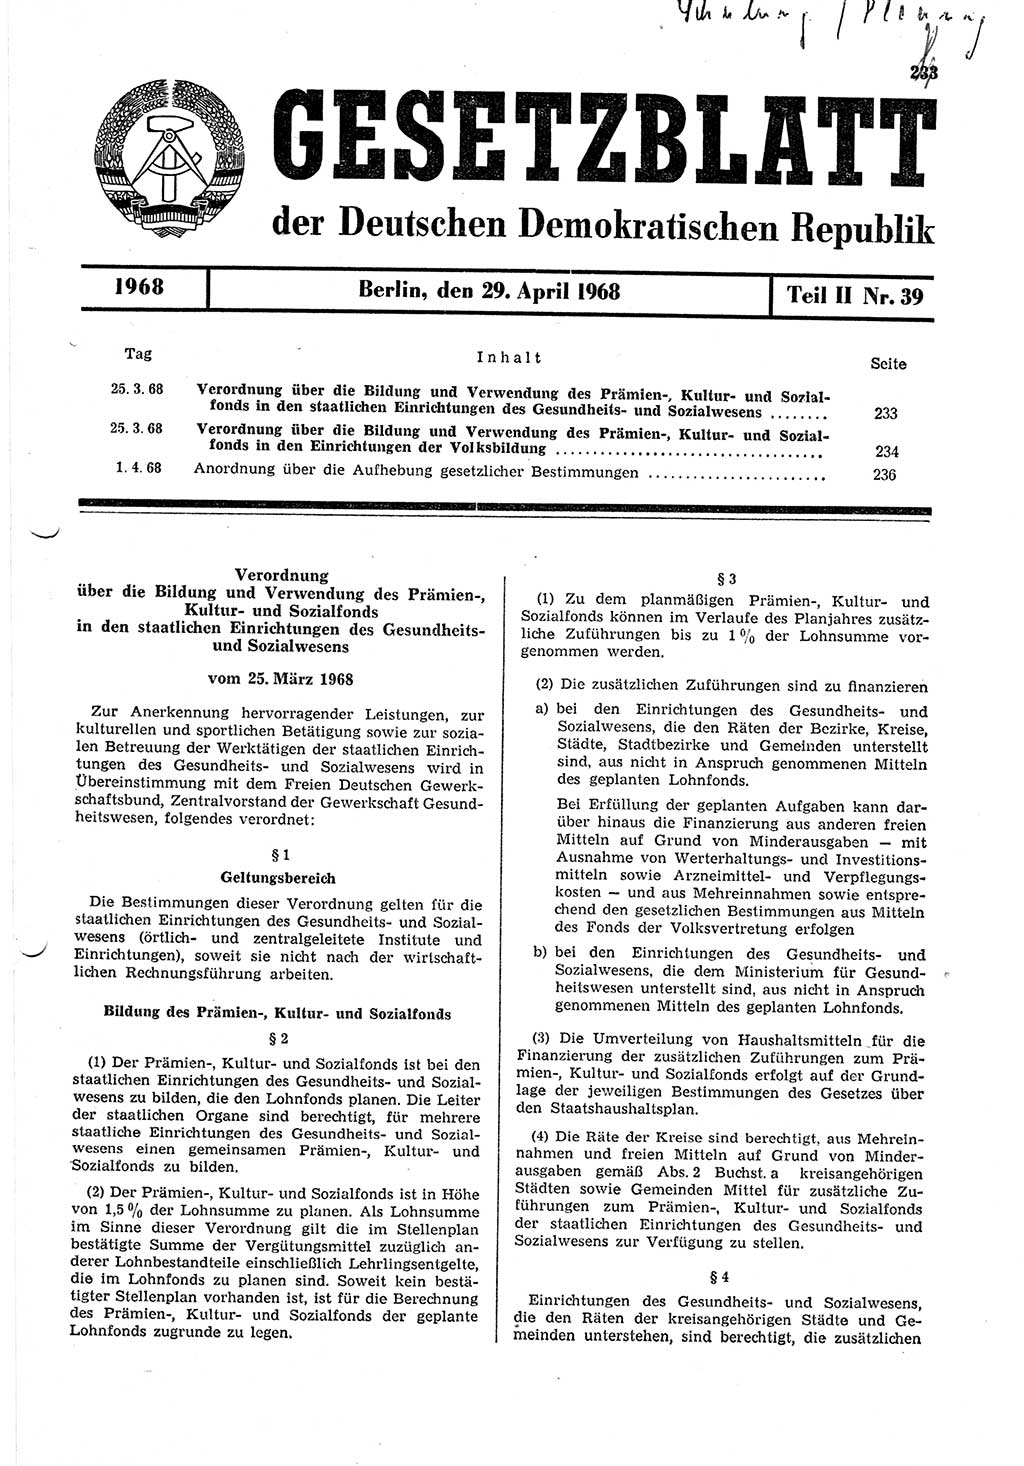 Gesetzblatt (GBl.) der Deutschen Demokratischen Republik (DDR) Teil ⅠⅠ 1968, Seite 233 (GBl. DDR ⅠⅠ 1968, S. 233)